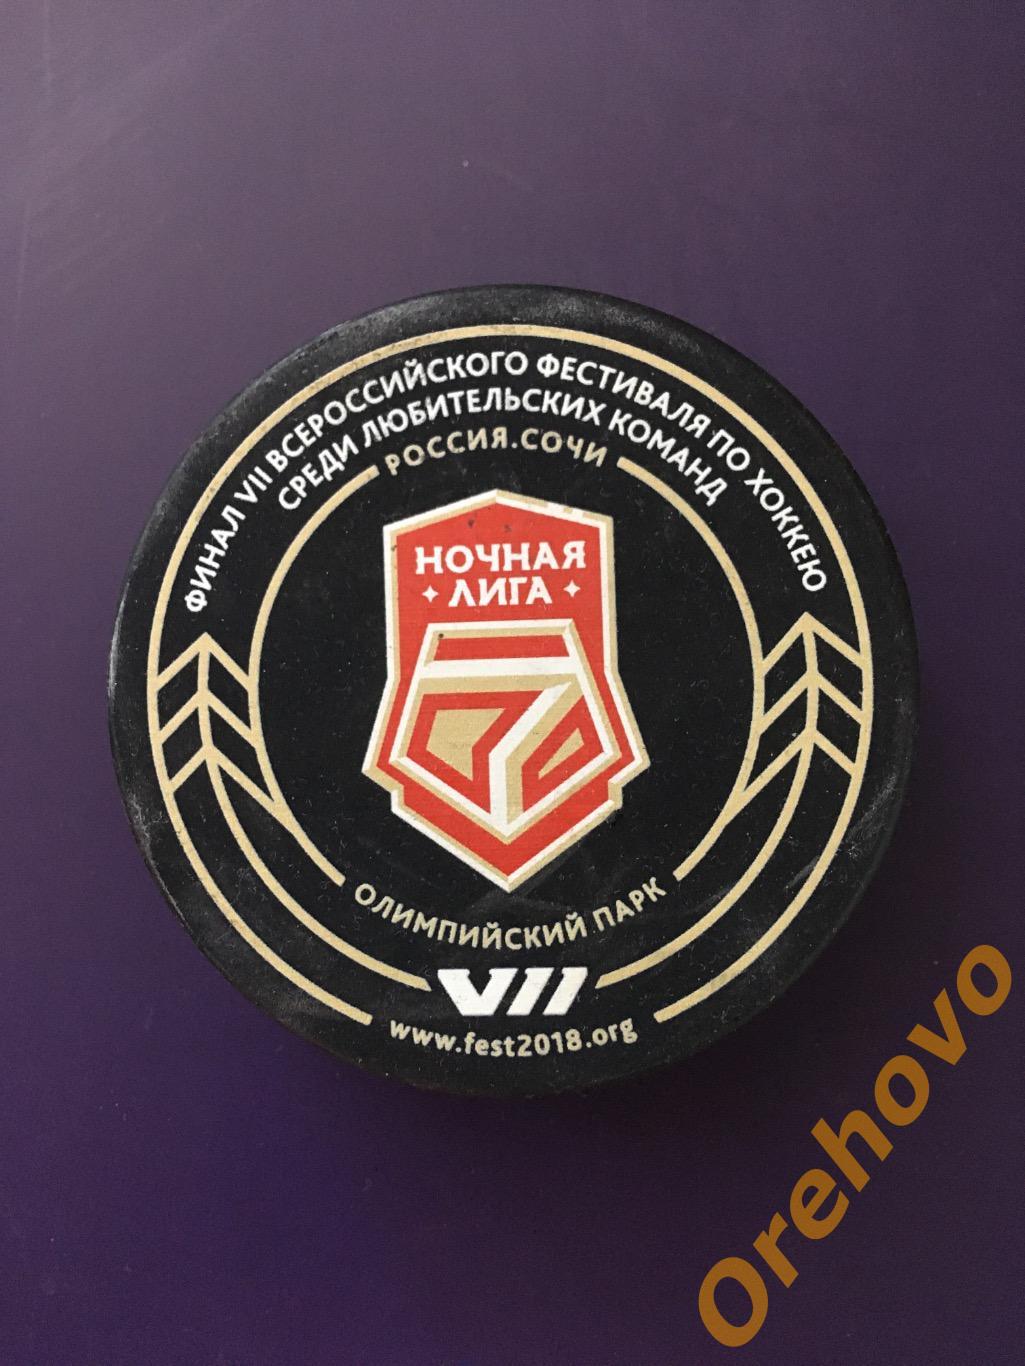 Шайба хоккей Финал VII Всероссийского фестиваля по хоккею Ночная Лига Сочи 2018